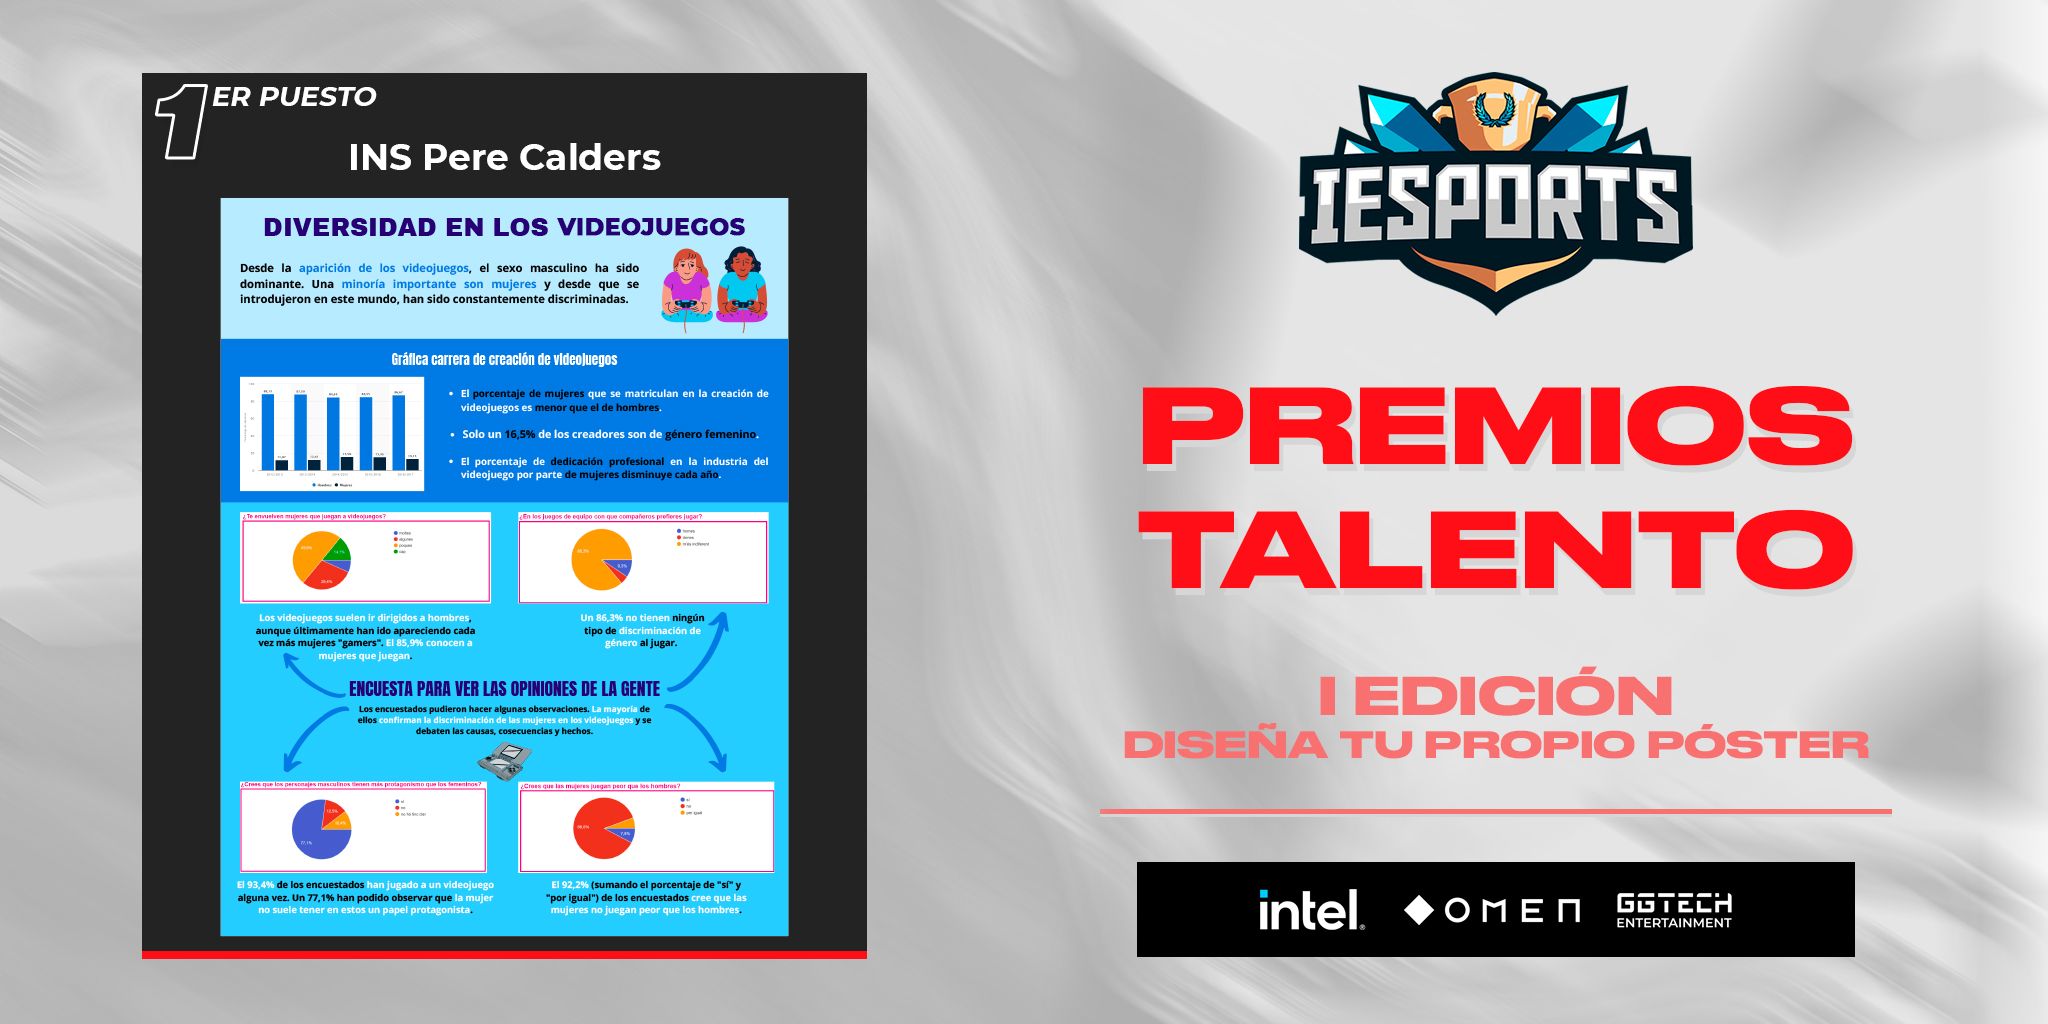 La Liga IESports pone en marcha los "Premios Talento IESports"